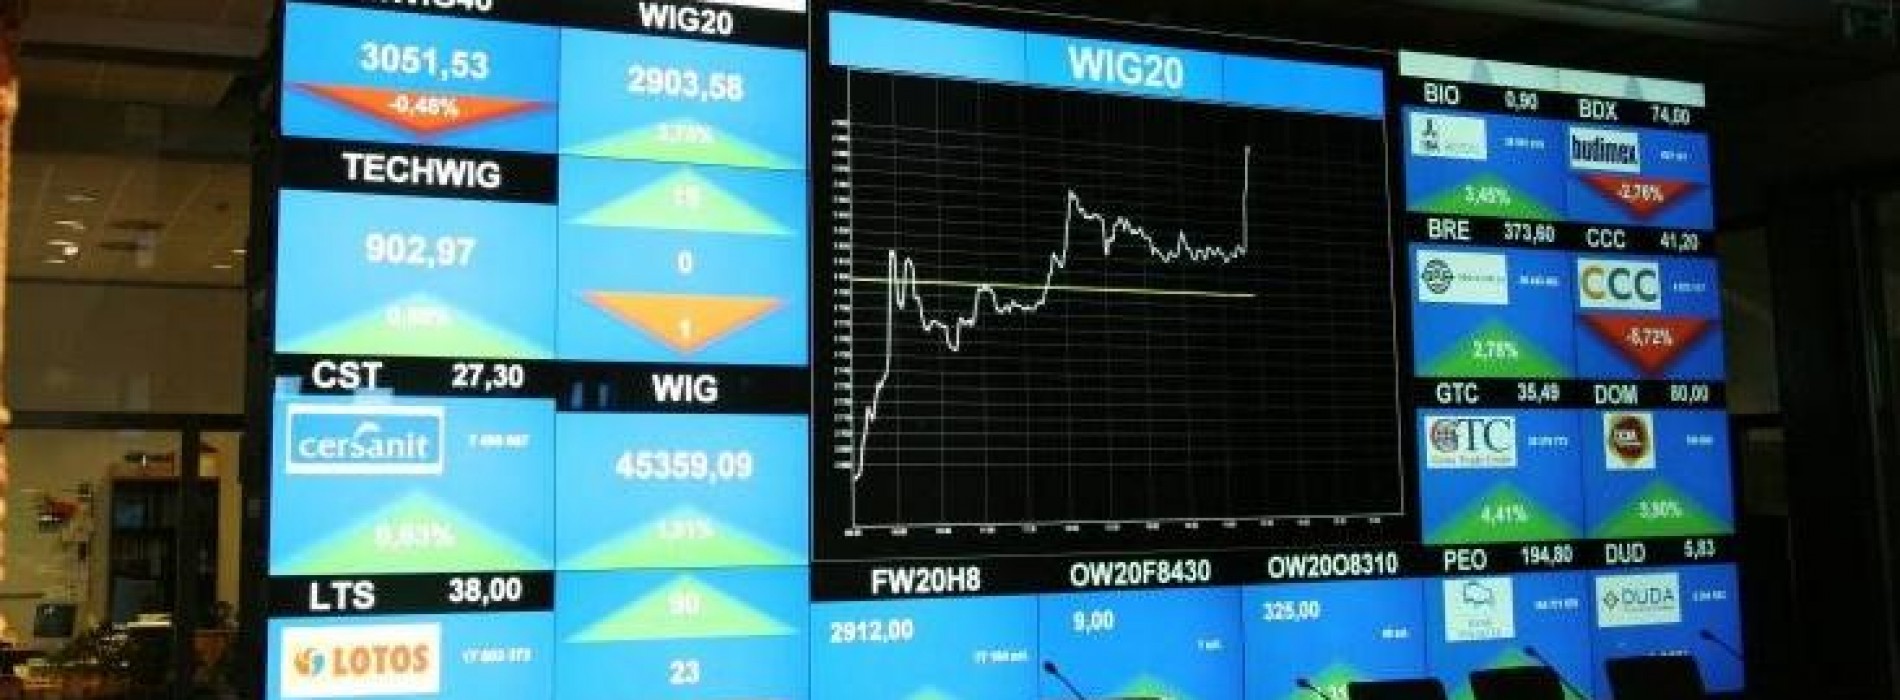 Poranny komentarz giełdowy – WIG20 blisko ważnych poziomów